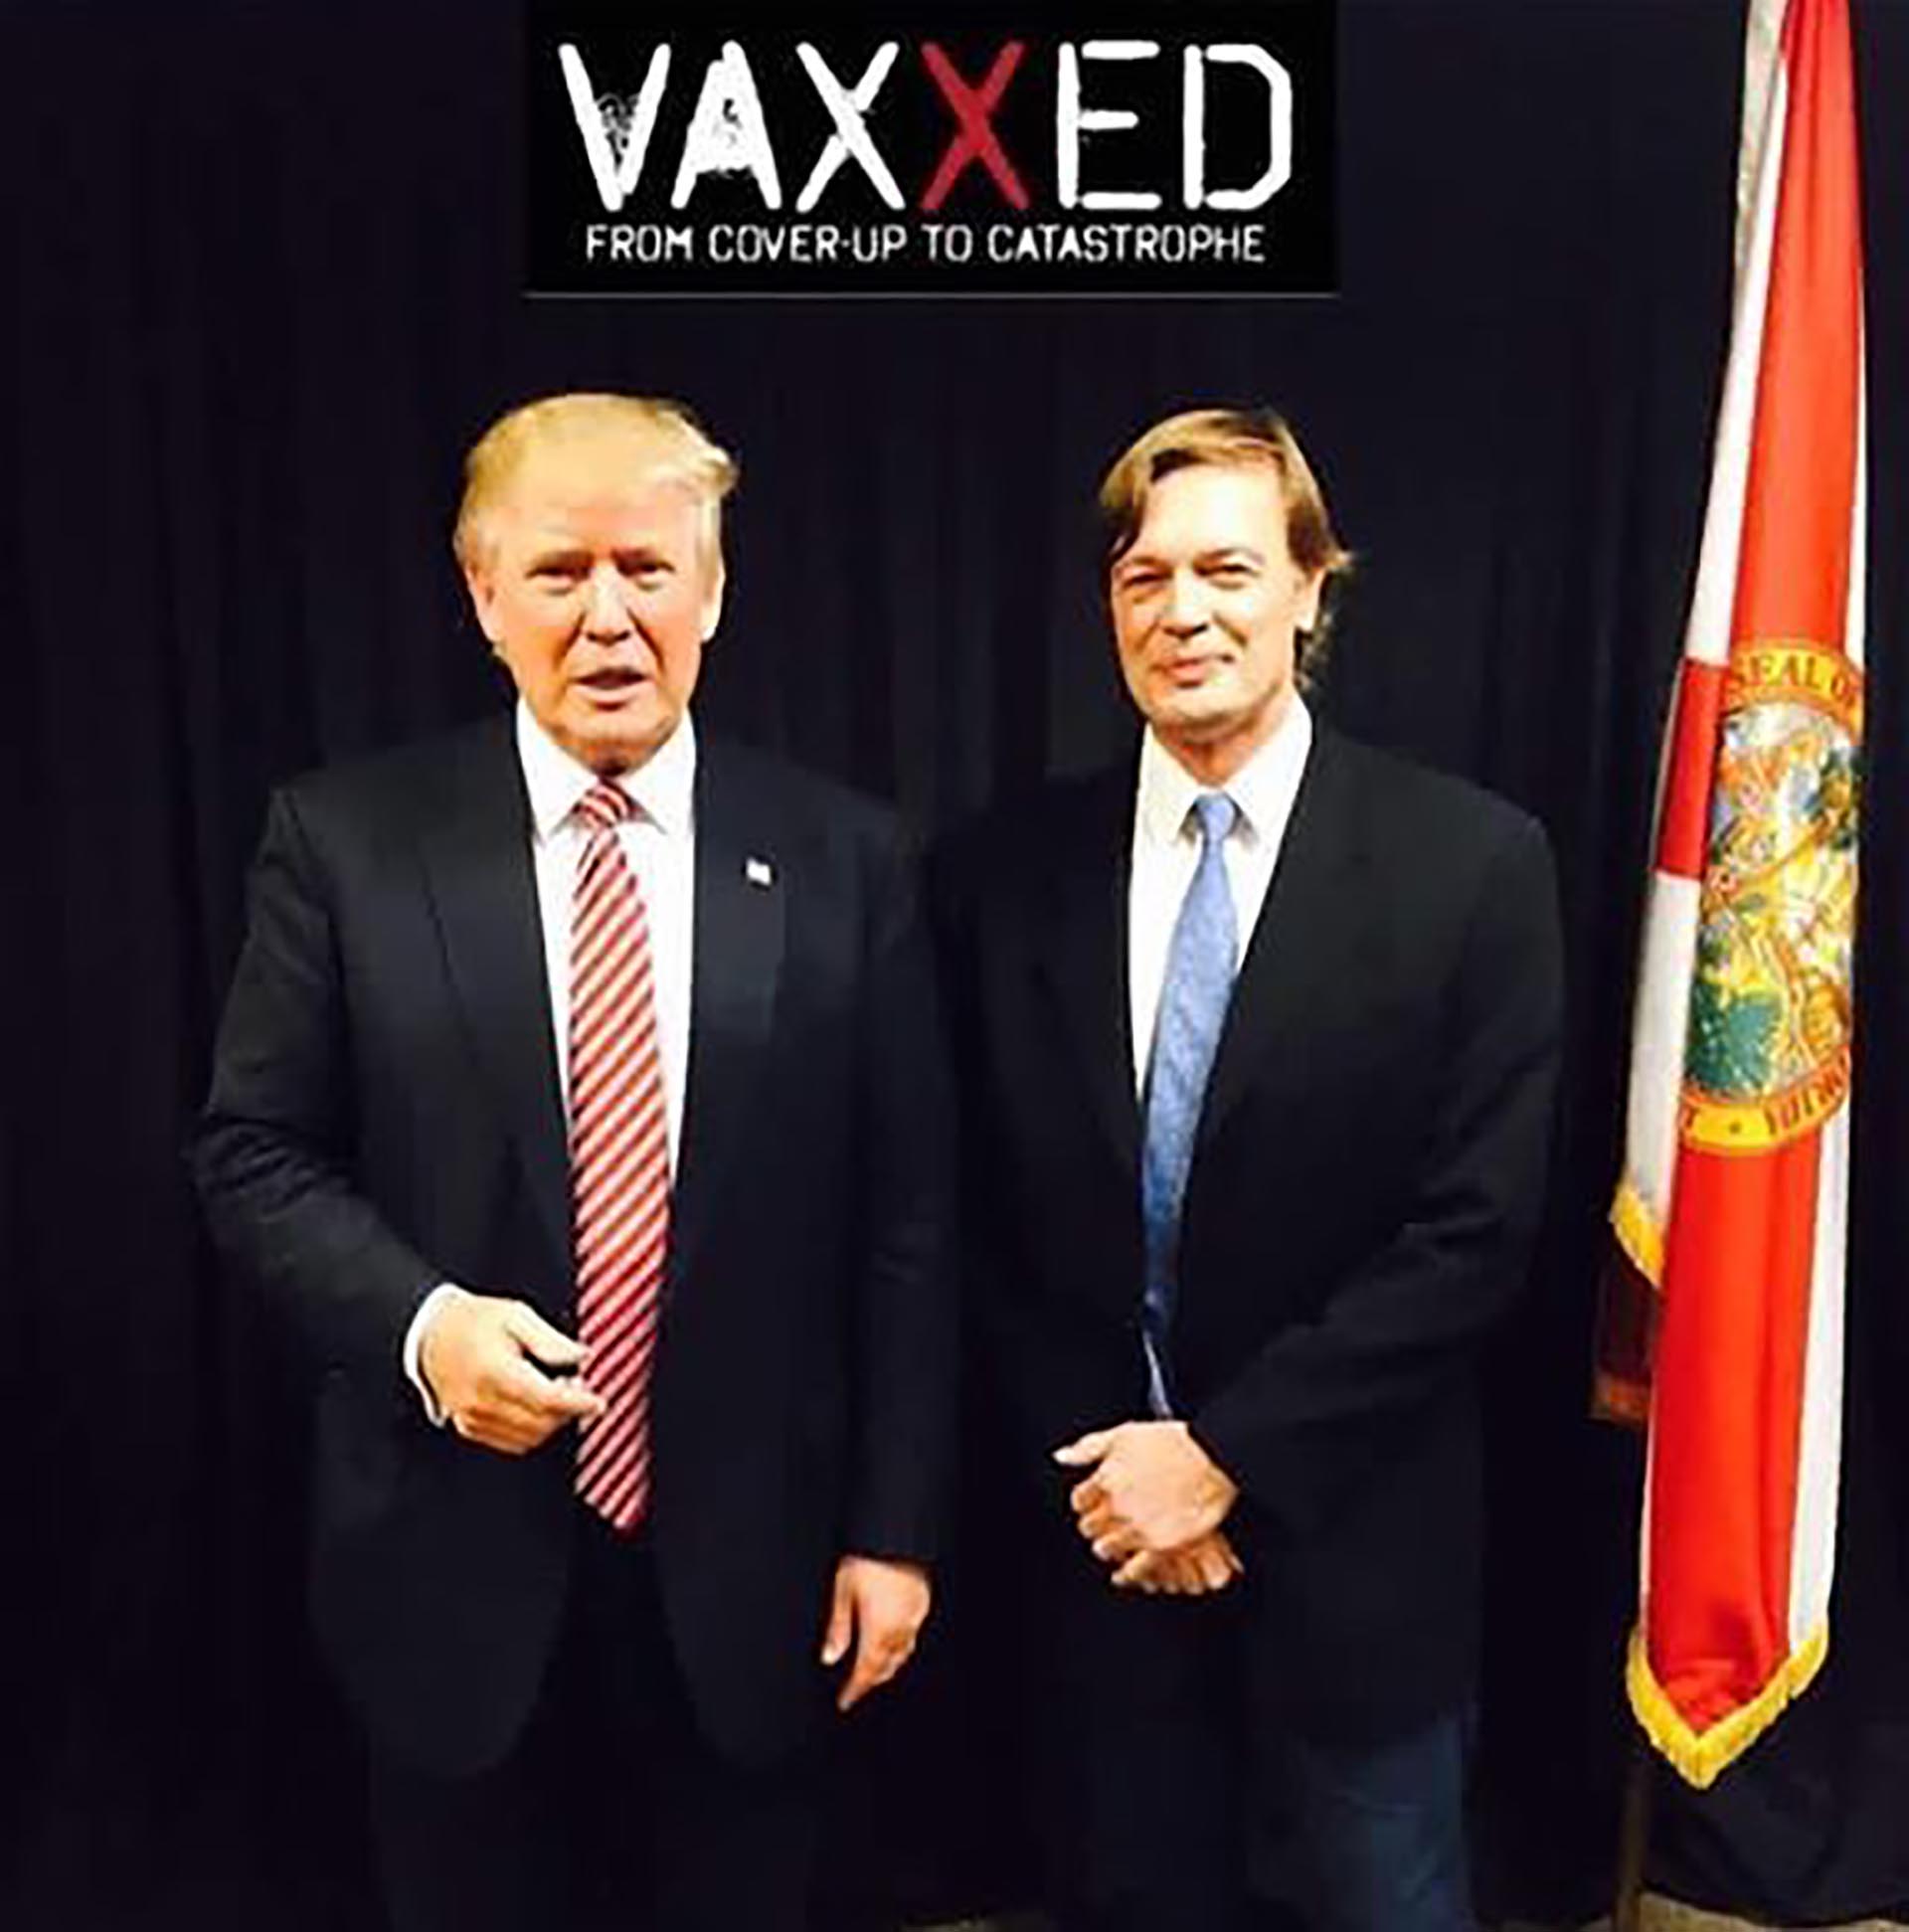 El presidente Donald Trump junto a Andrew Wakefield director del pseudodocumental titulado “Vaxxed”, sobre una supuesta conspiración para encubrir el vínculo entre el autismo y las vacunas.